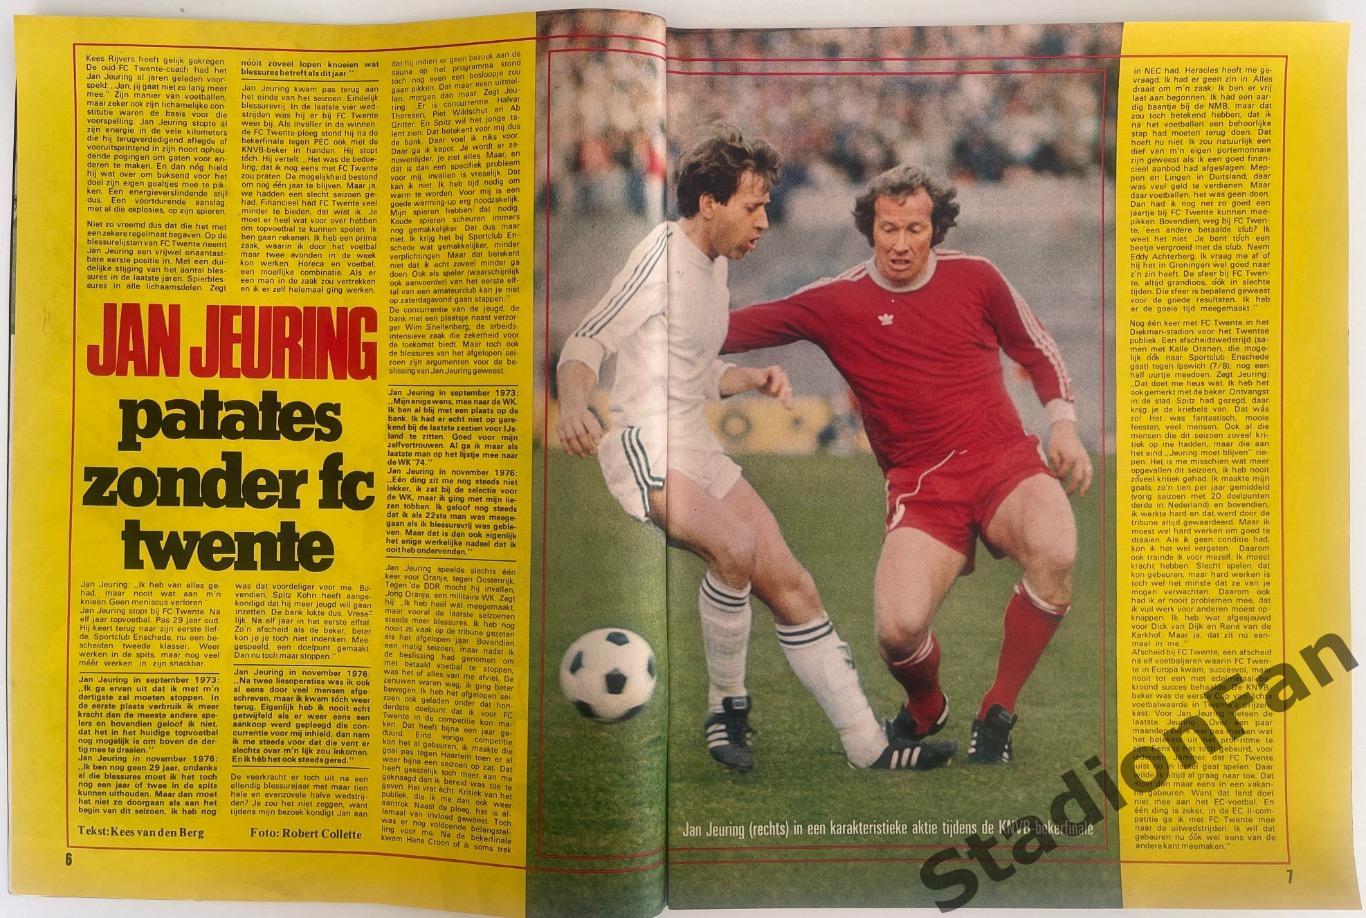 Журнал Voetbal nr.24 - 1977 год. 1